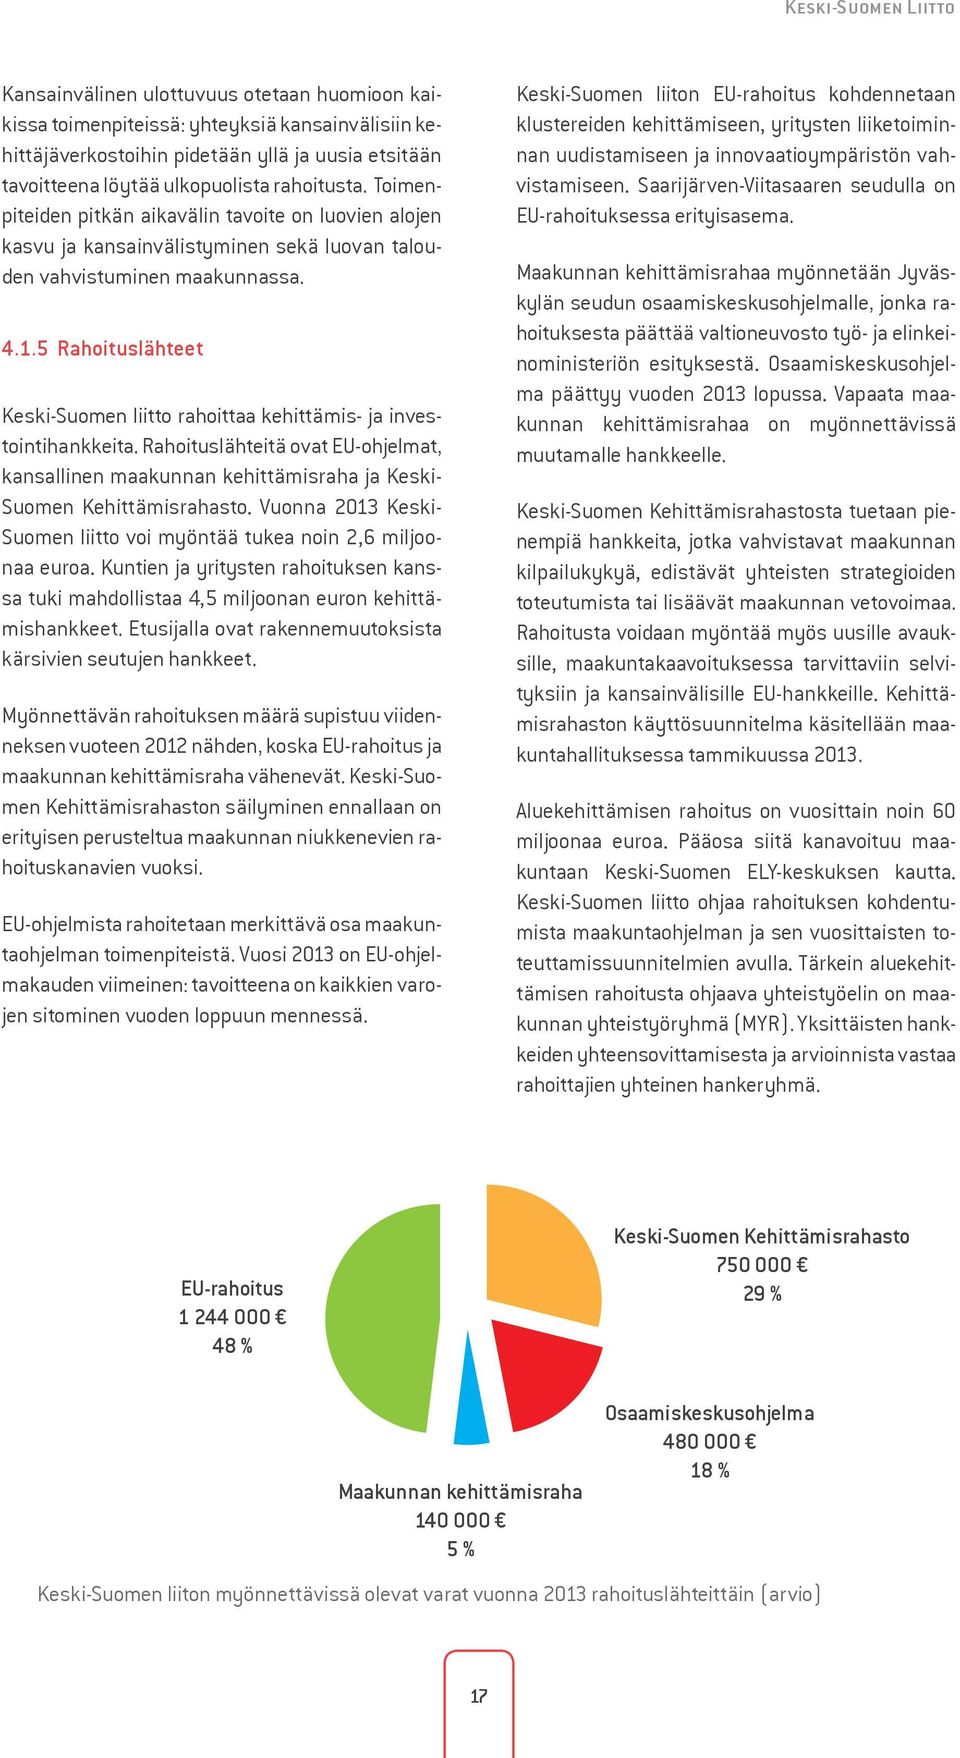 5 Rahoituslähteet Keski-Suomen liitto rahoittaa kehittämis- ja investointihankkeita. Rahoituslähteitä ovat EU-ohjelmat, kansallinen maakunnan kehittämisraha ja Keski- Suomen Kehittämisrahasto.